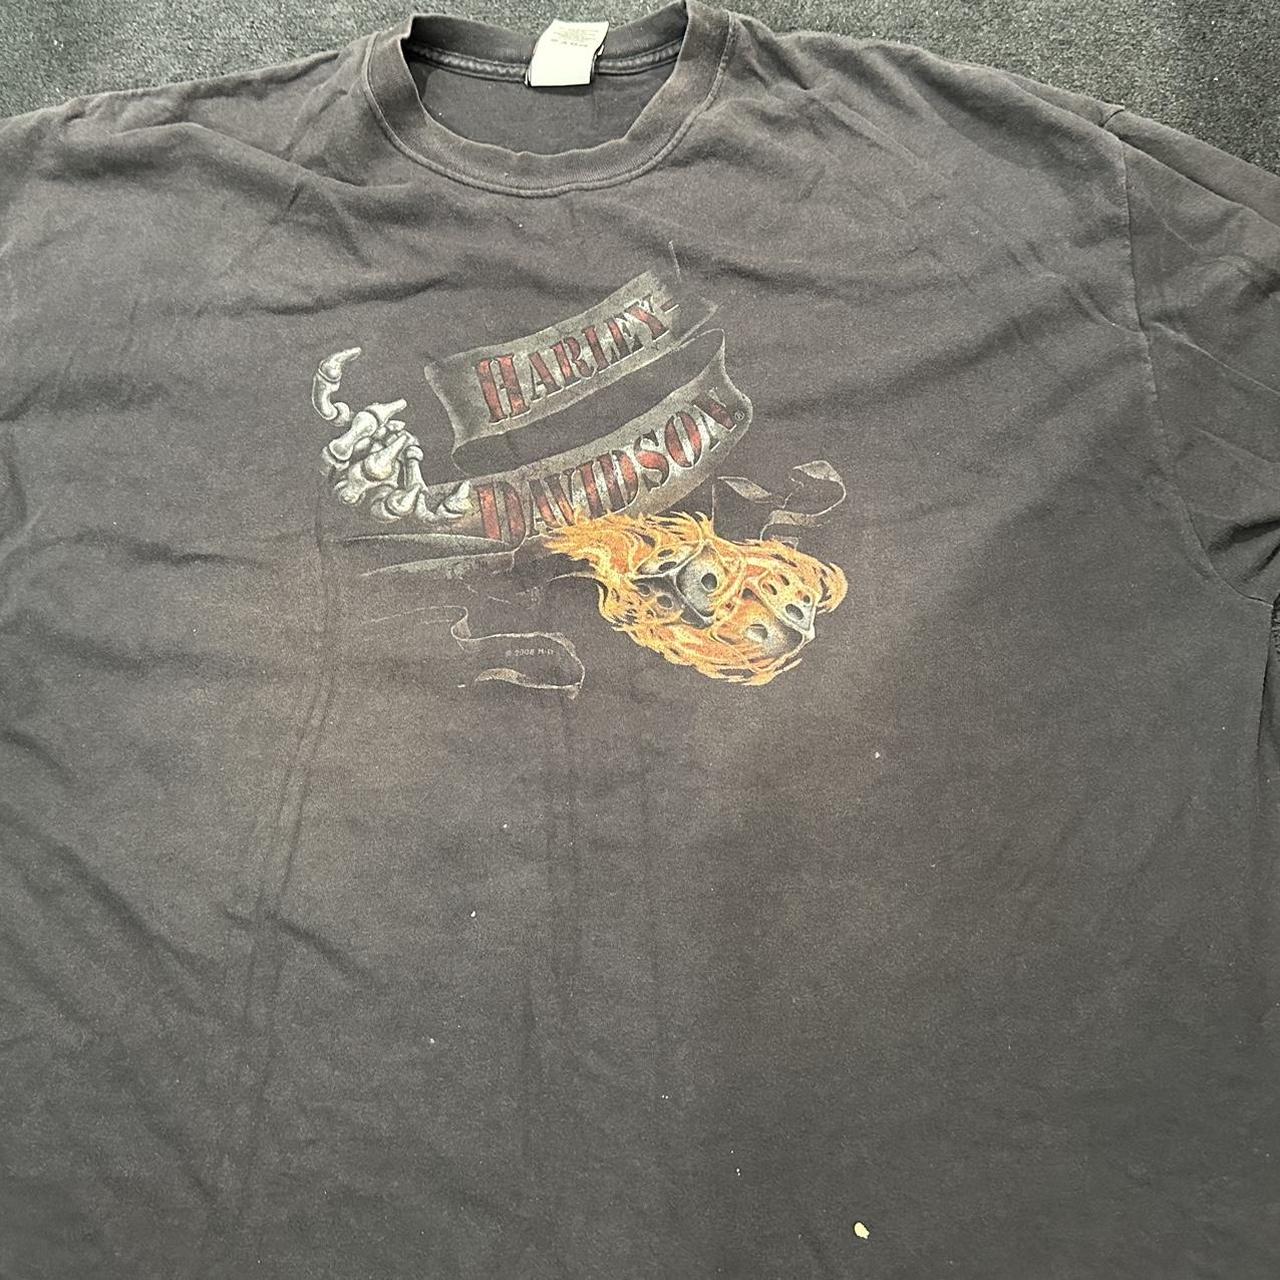 Vintage Harley Davidson t-shirt. Size 3xl but fits... - Depop